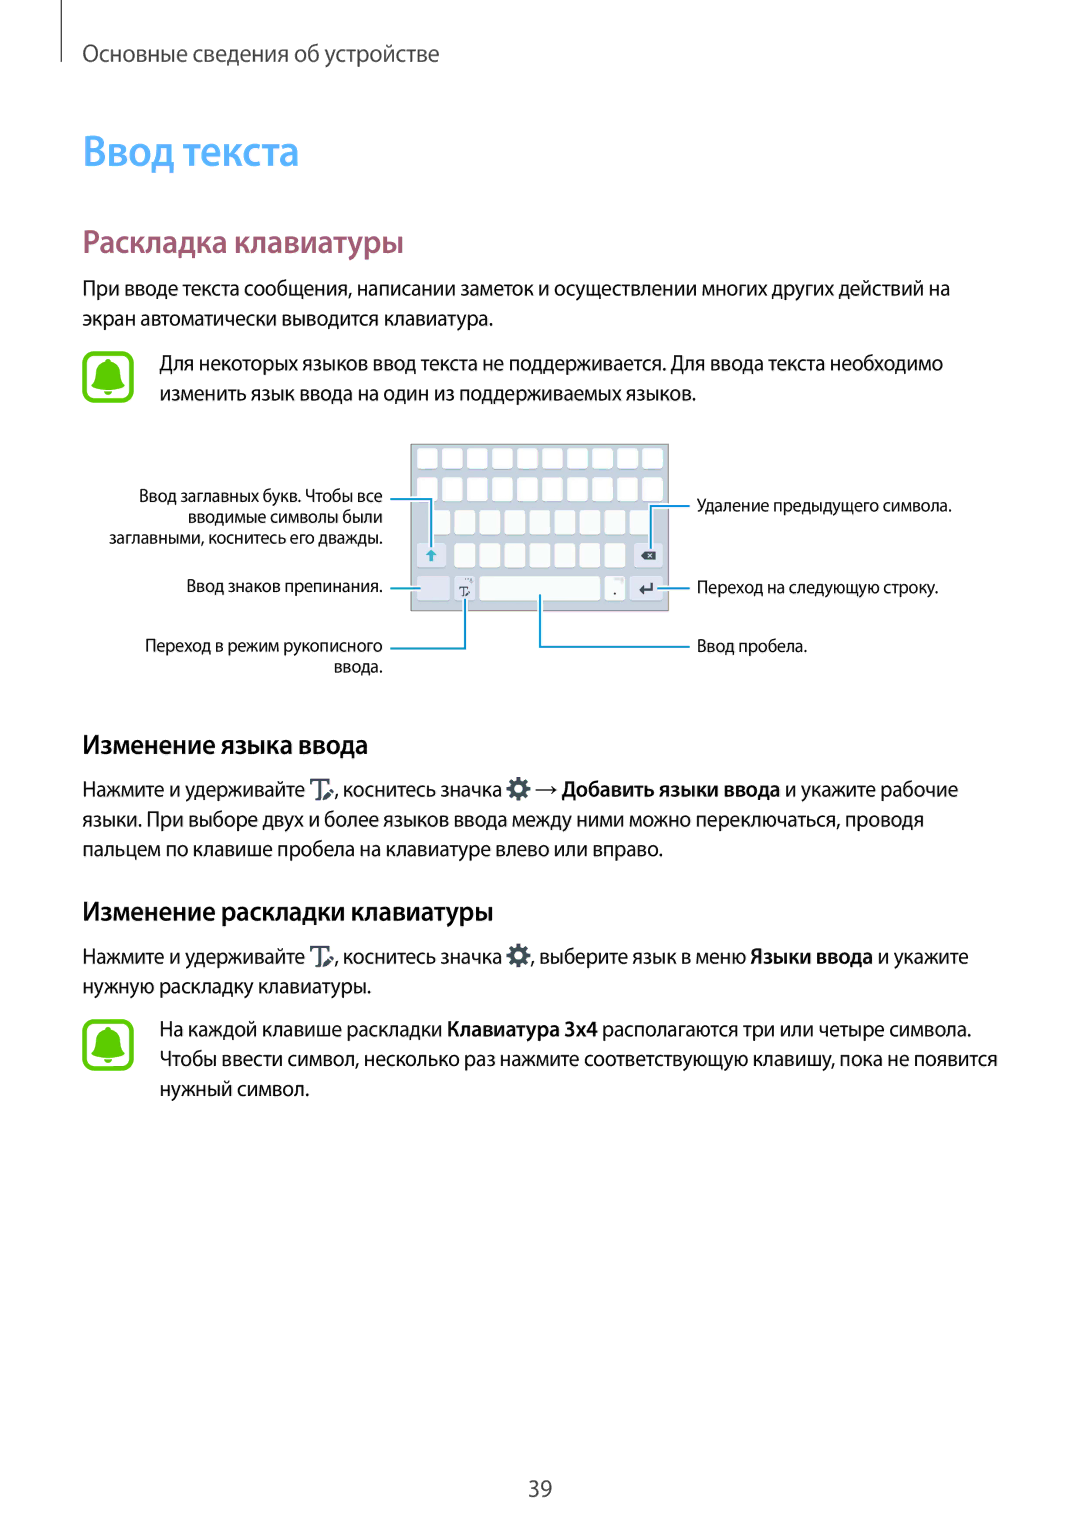 Samsung SM-N920CZKESER manual Ввод текста, Раскладка клавиатуры, Изменение языка ввода, Изменение раскладки клавиатуры 